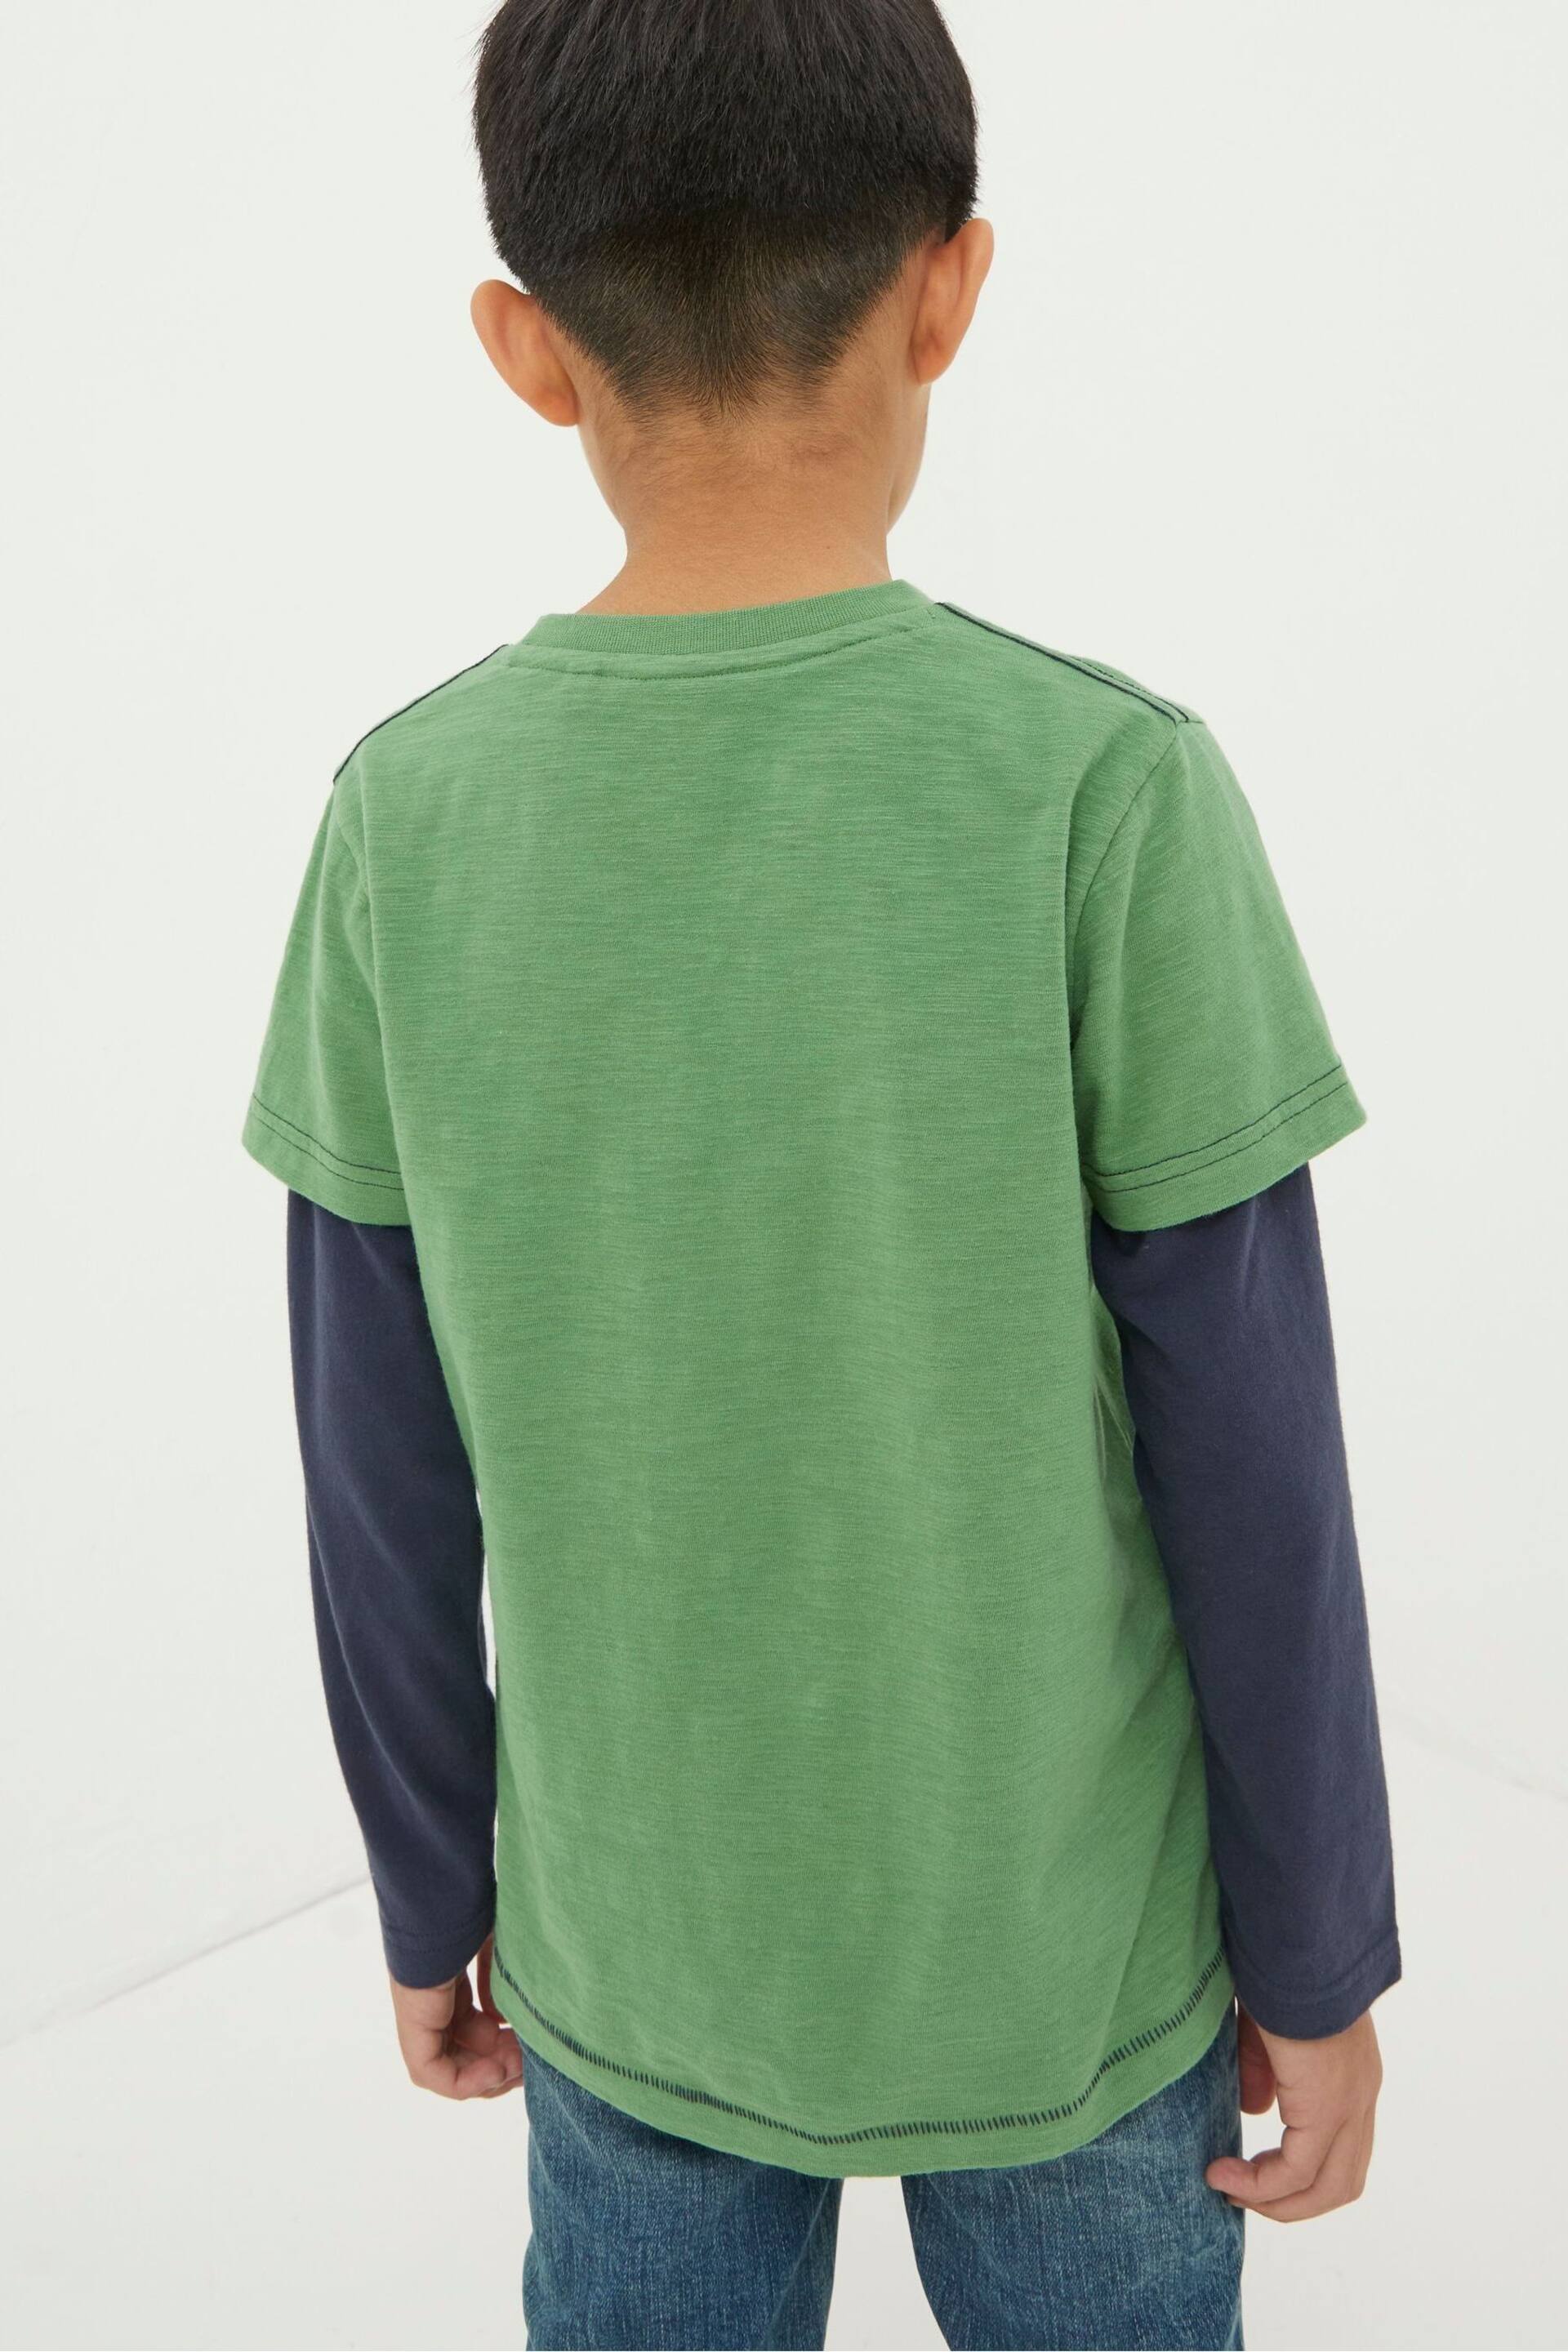 FatFace Green Bird Spotting Jersey T-Shirt - Image 2 of 4